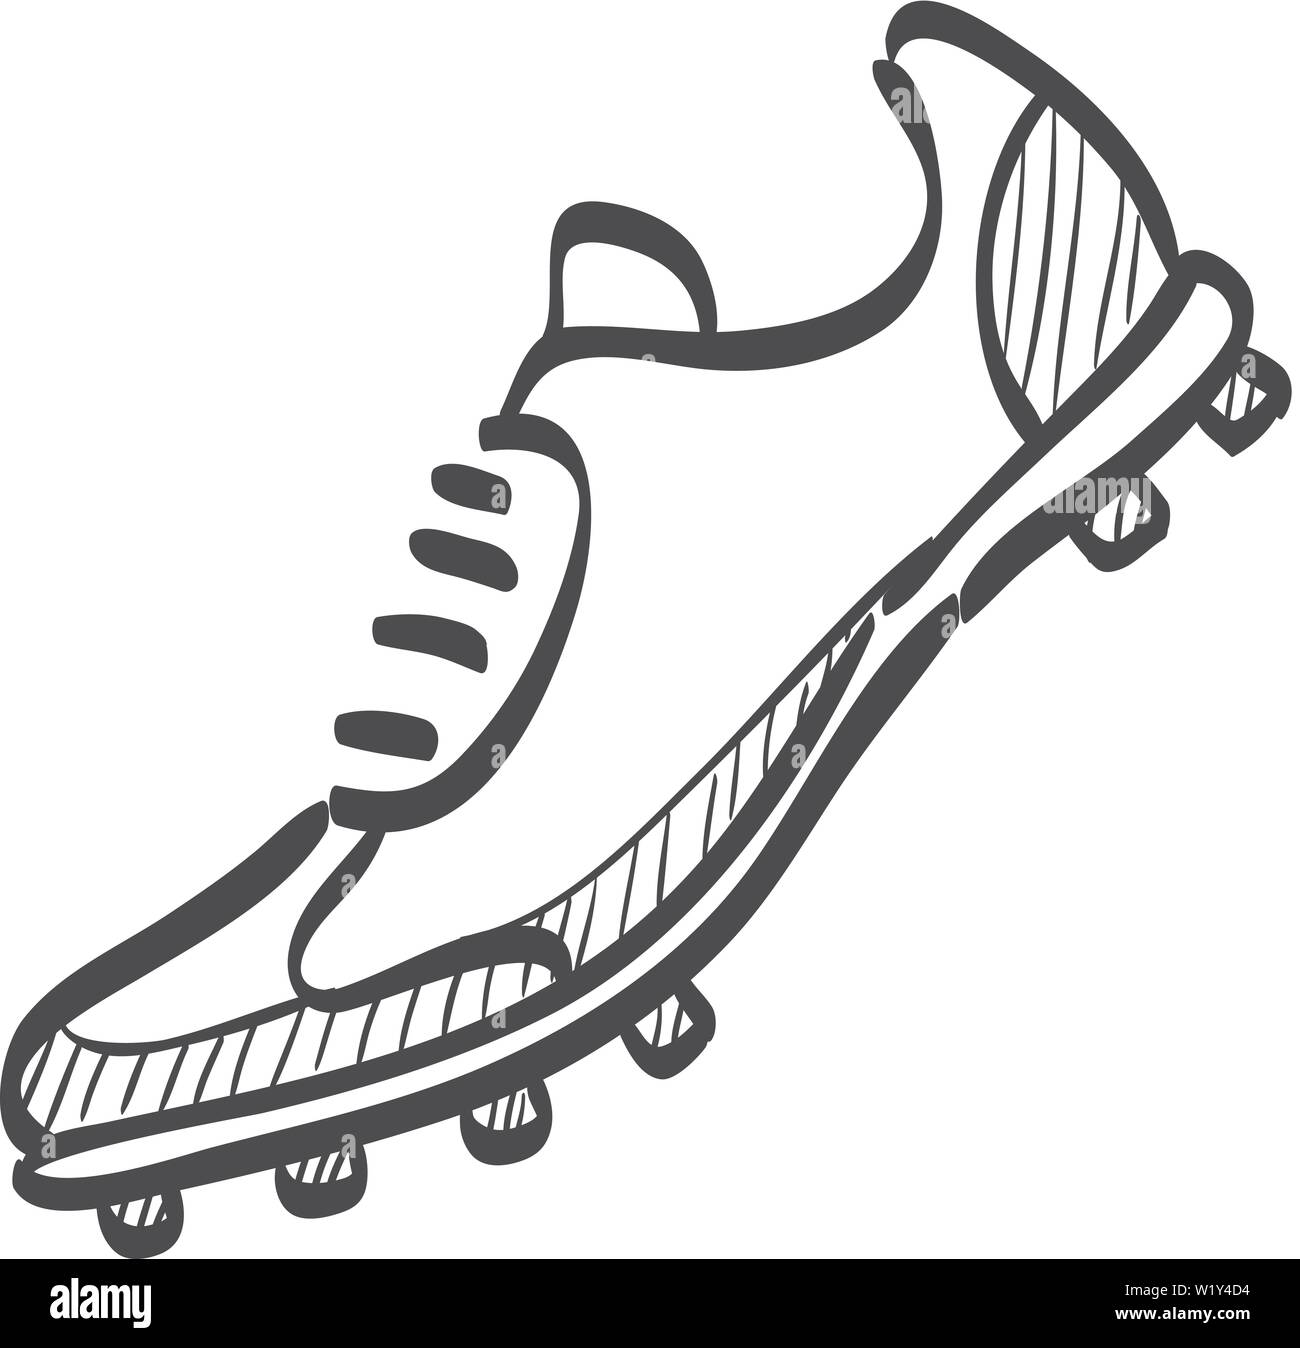 Chaussure de football en icône doodle sketch lignes. Sport football  protection des pieds Image Vectorielle Stock - Alamy